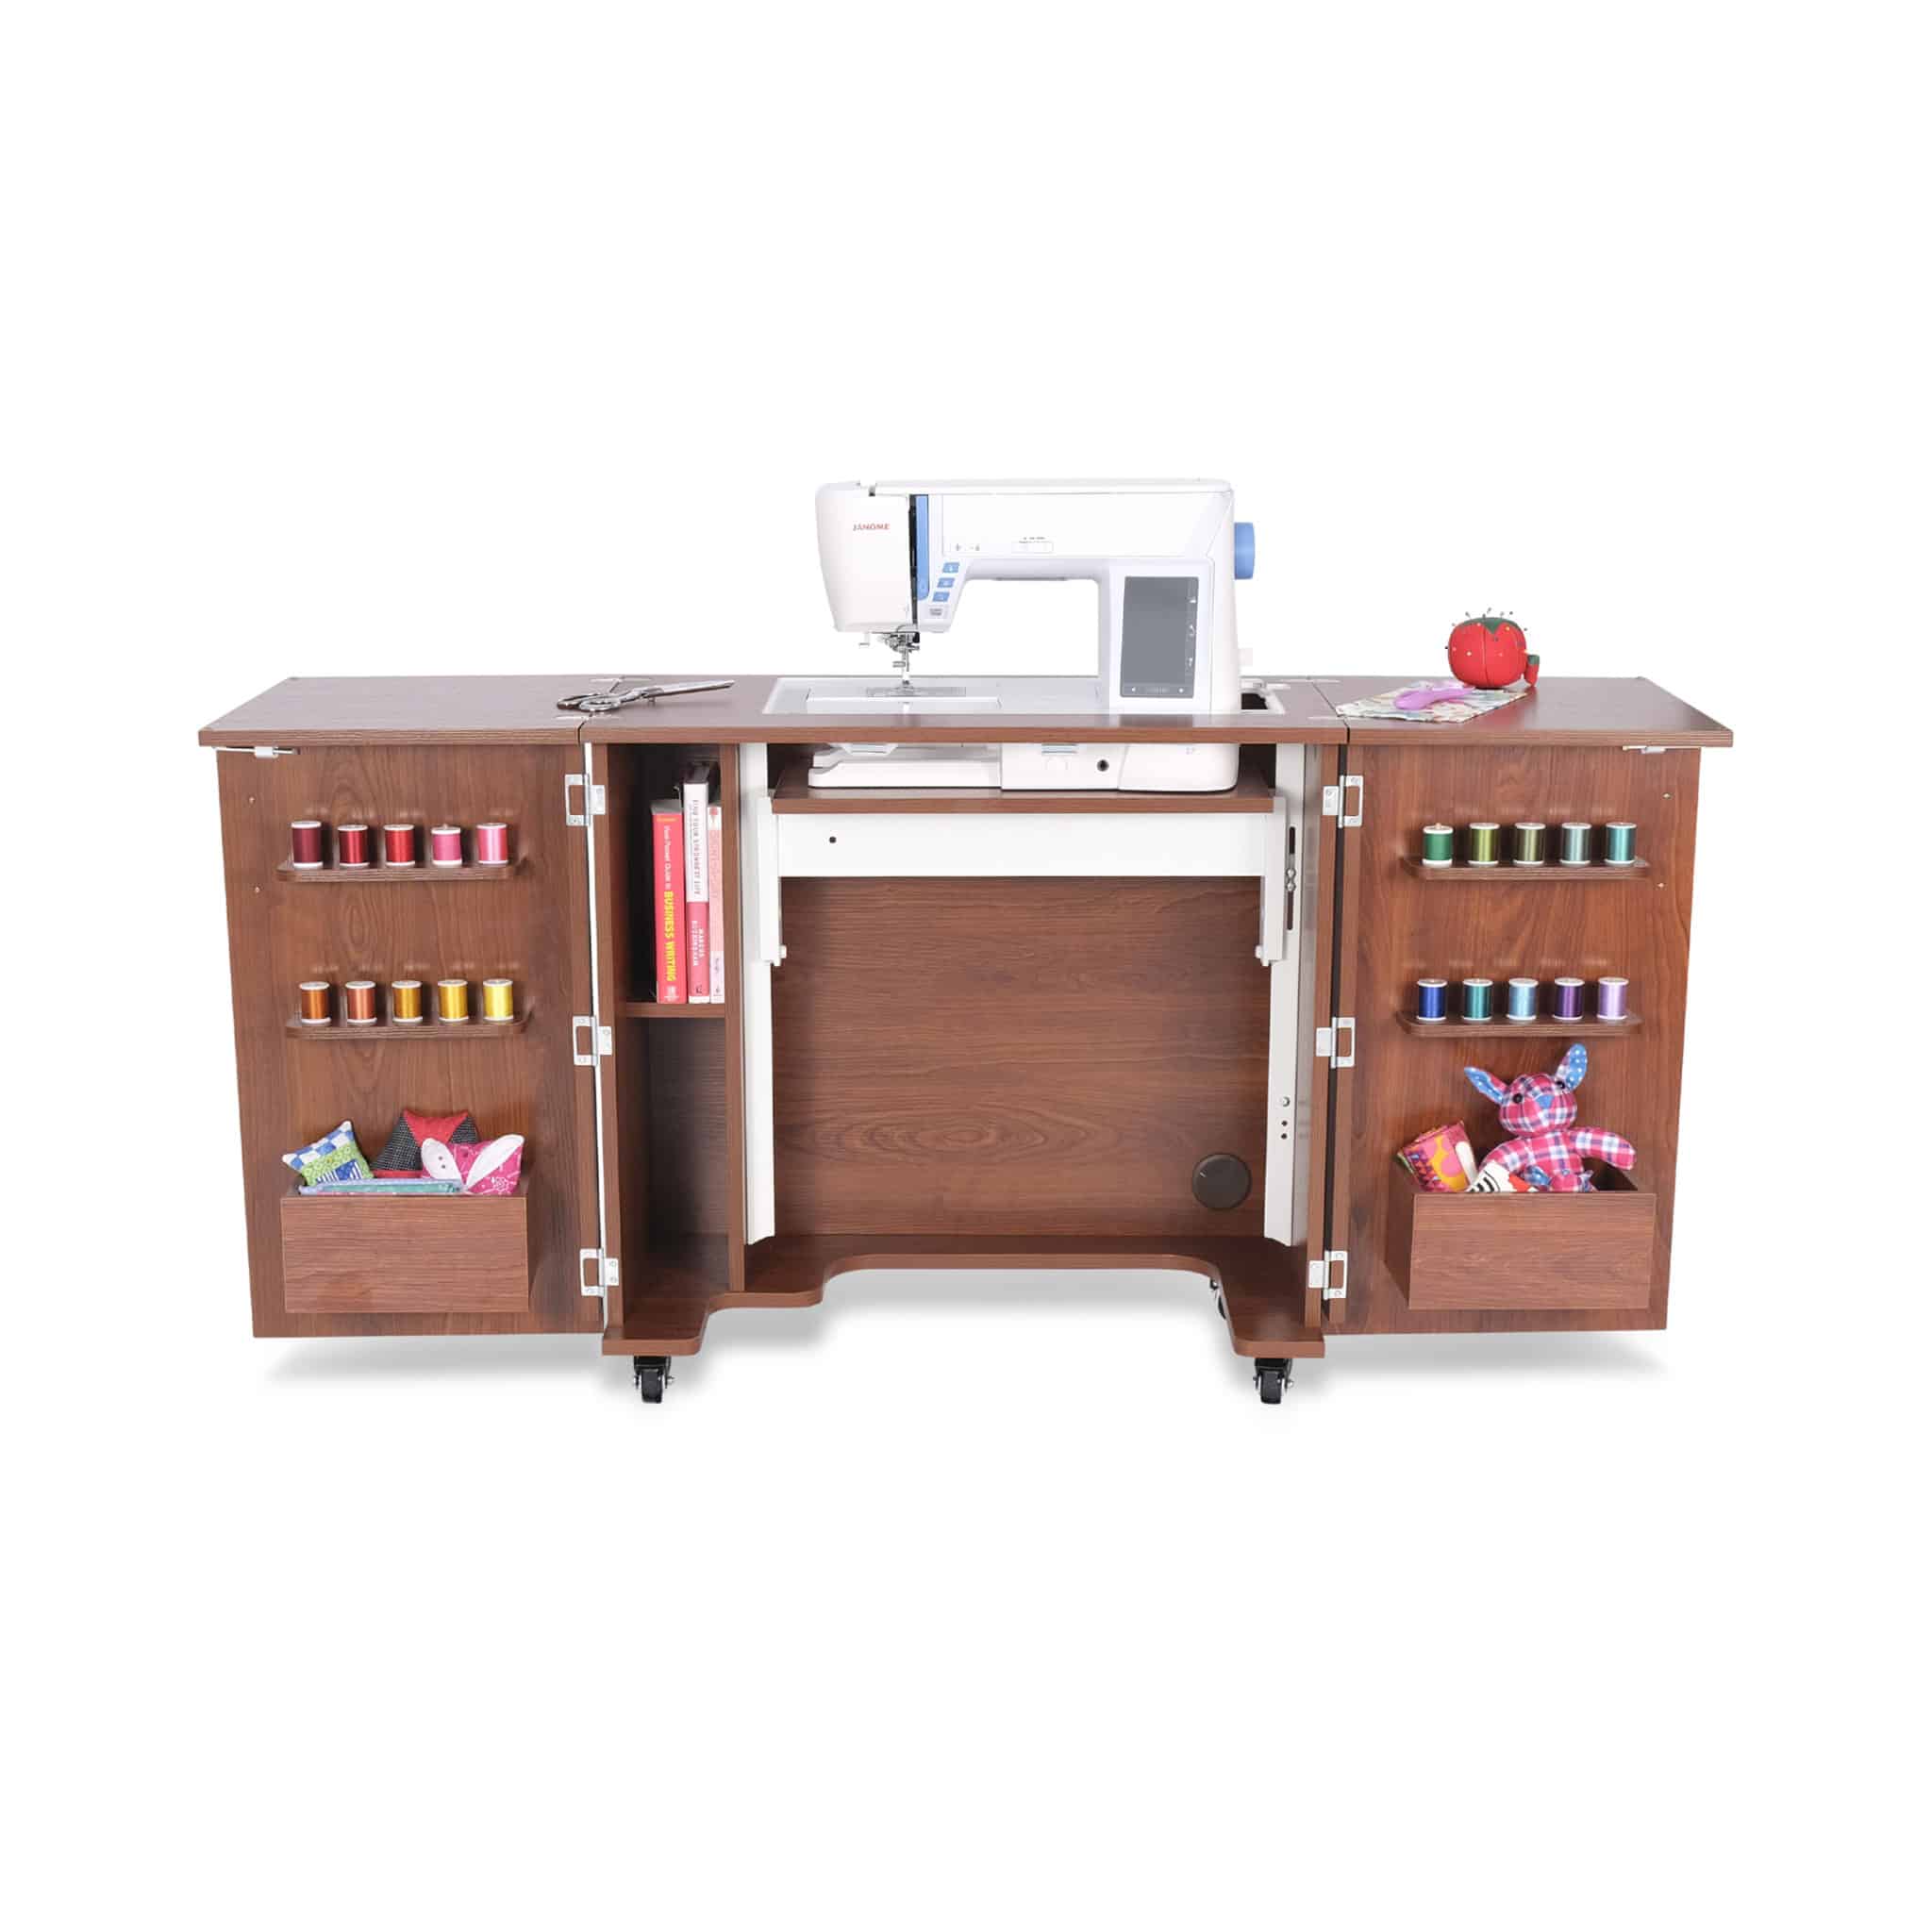 Bandicoot Sewing Cabinet - Kangaroo Sewing Furniture